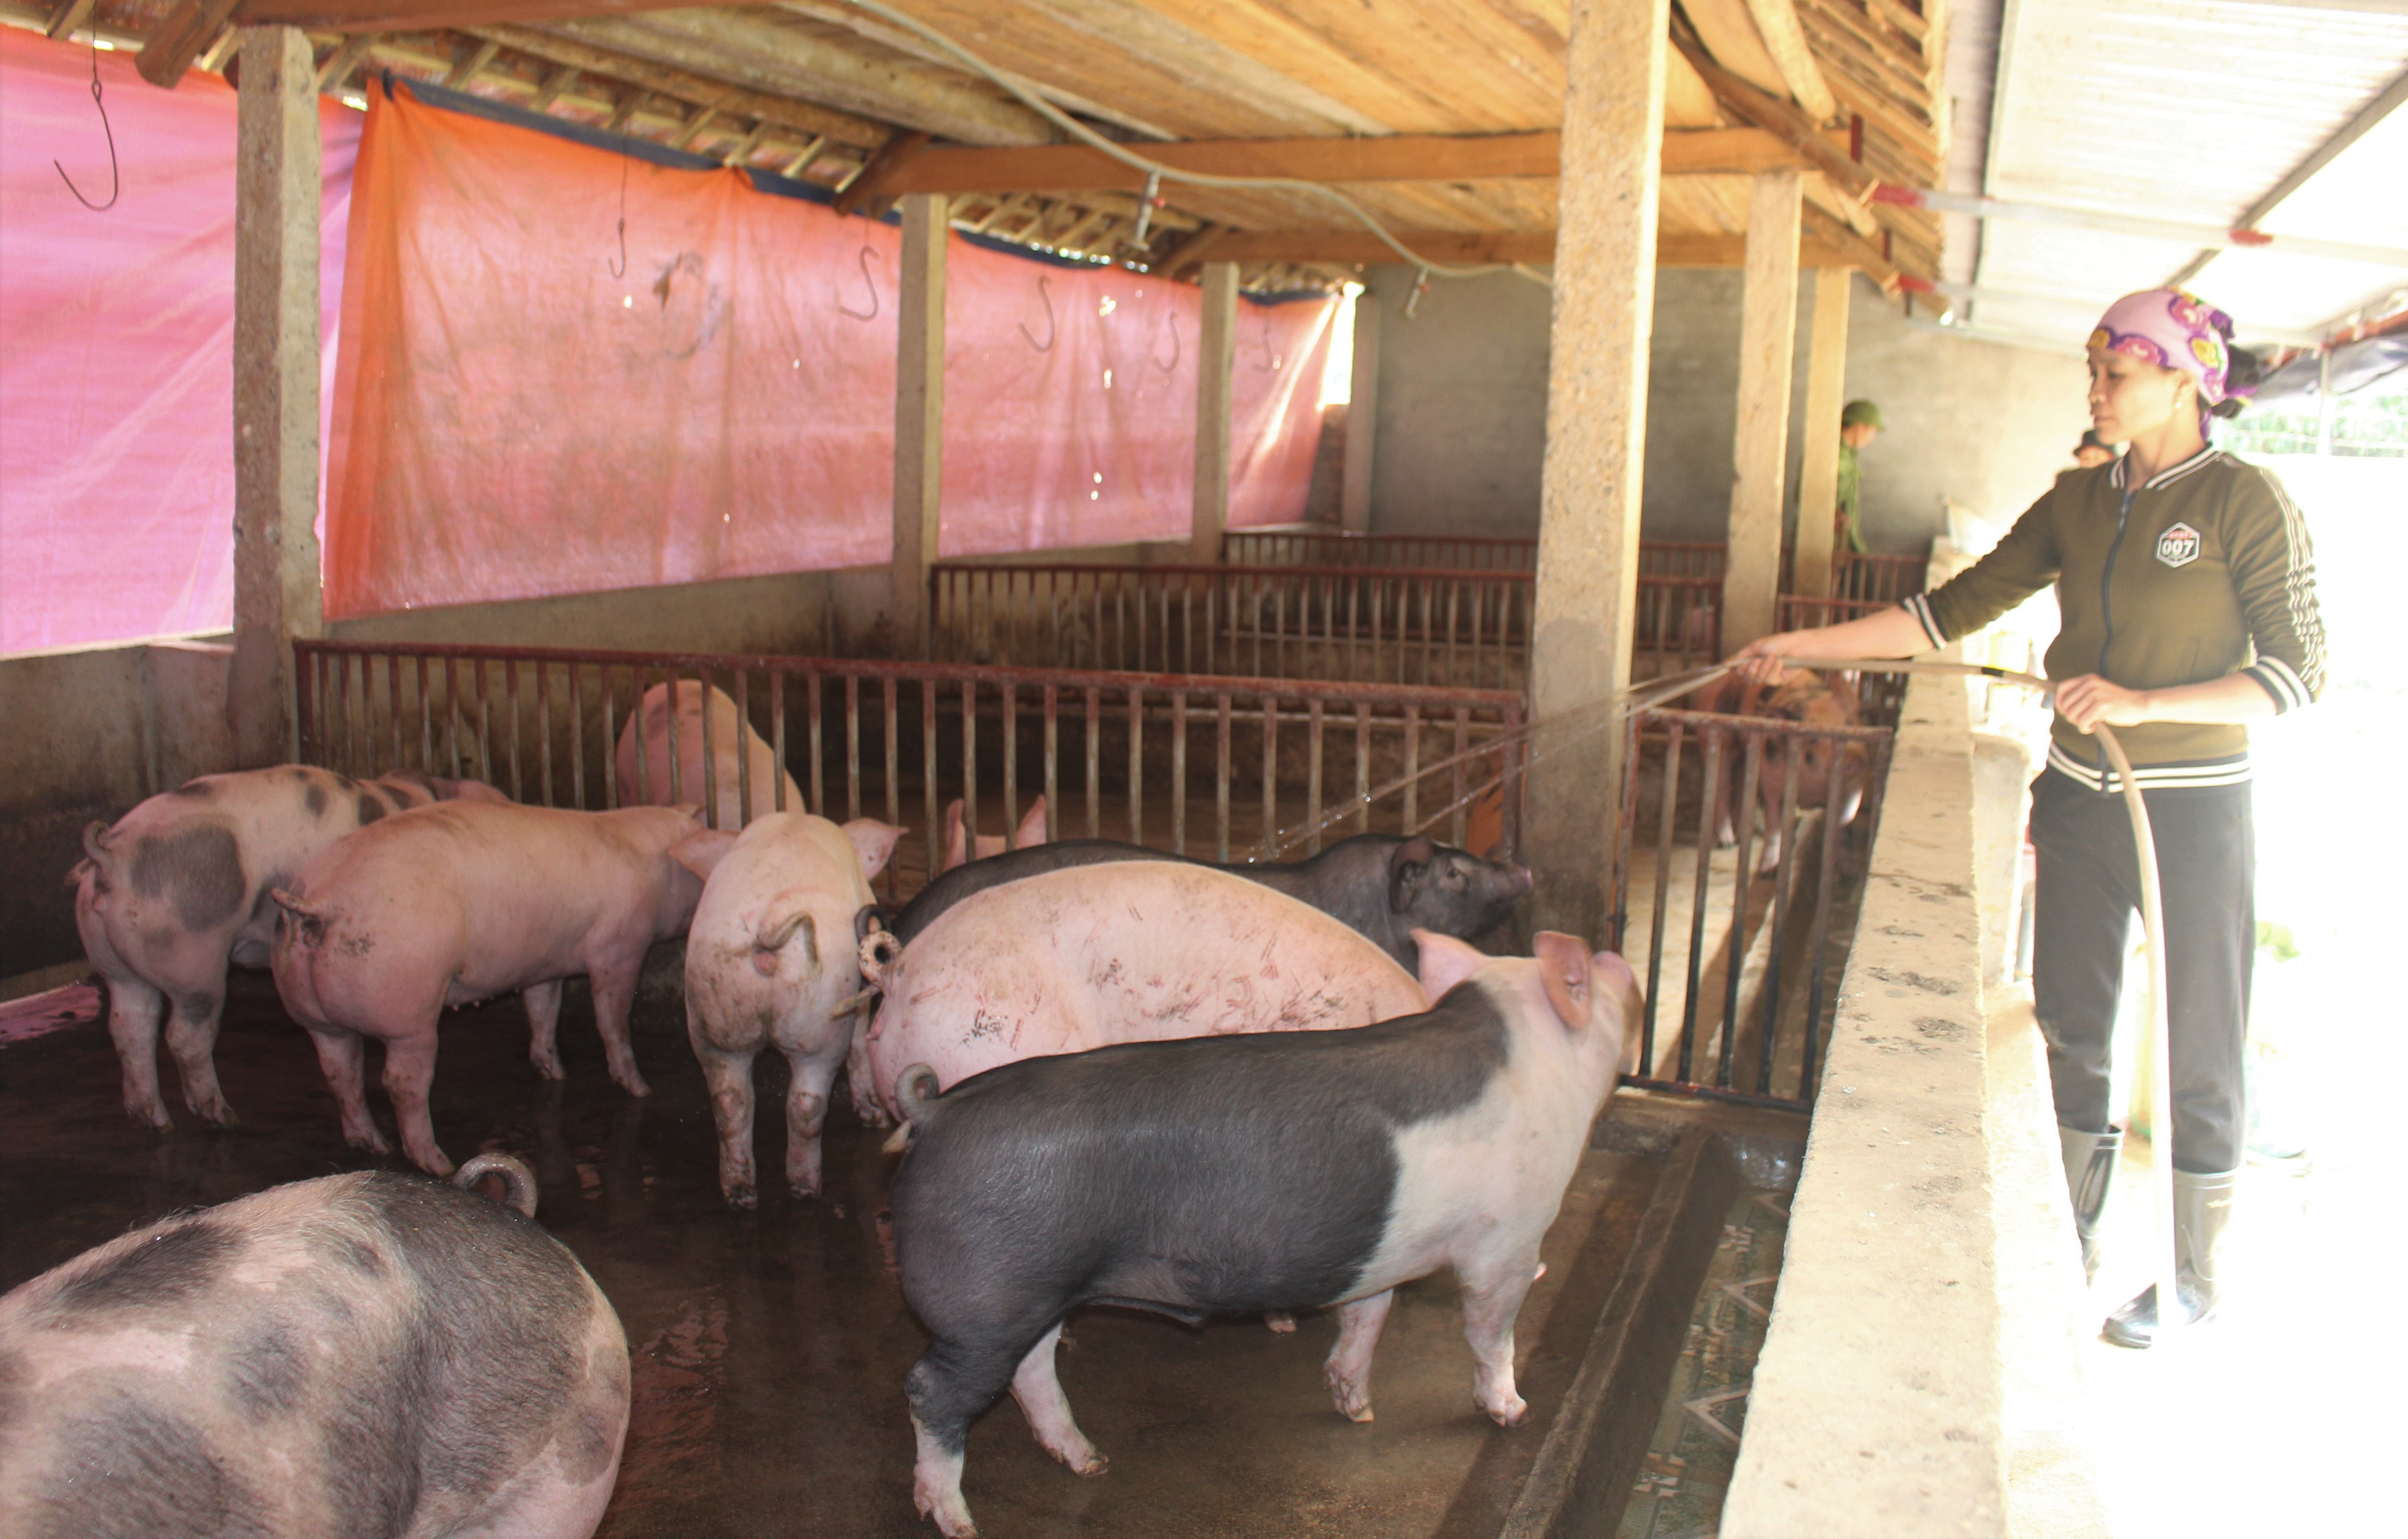  Gia đình chị Nguyễn Thị Loan ở thôn 3 xã Tam Sơn chủ động trong quá trình chăn nuôi lợn nhờ có nái sinh sản. Ảnh Thái HIền